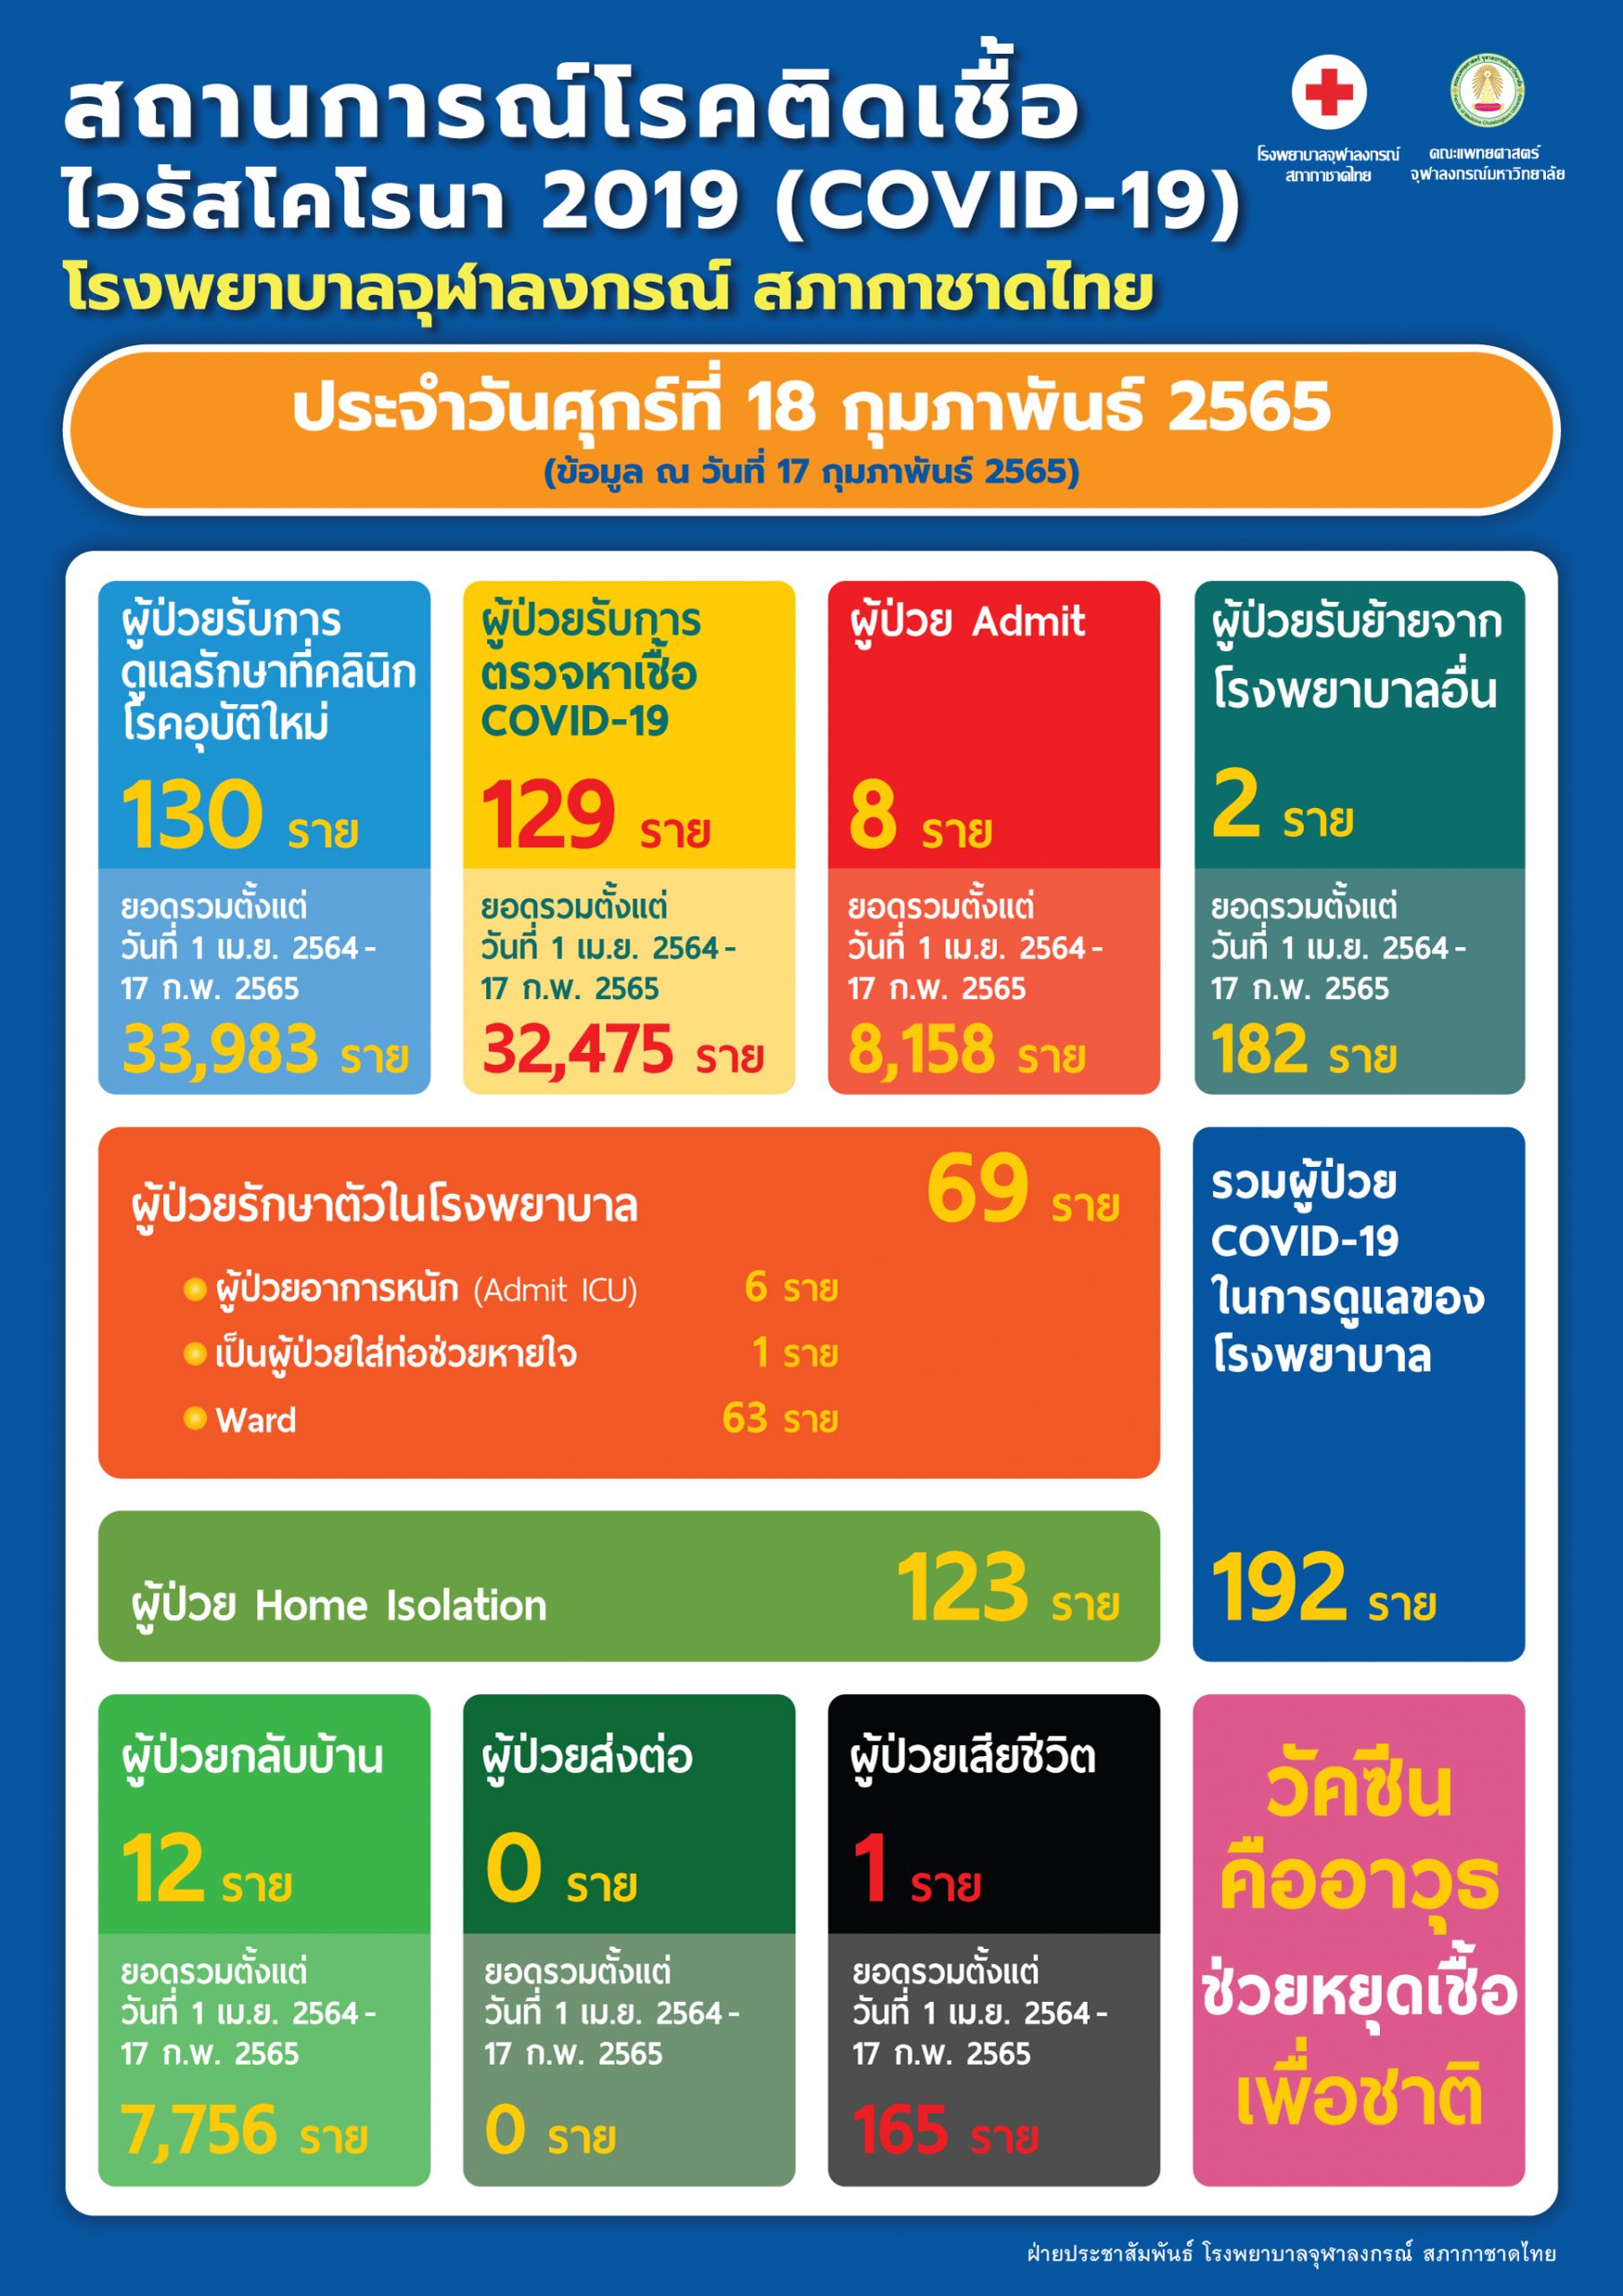 สถานการณ์โรคติดเชื้อไวรัสโคโรนา 2019 (COVID-19) โรงพยาบาลจุฬาลงกรณ์ สภากาชาดไทย ประจำวันศุกร์ที่ 18 กุมภาพันธ์ 2565